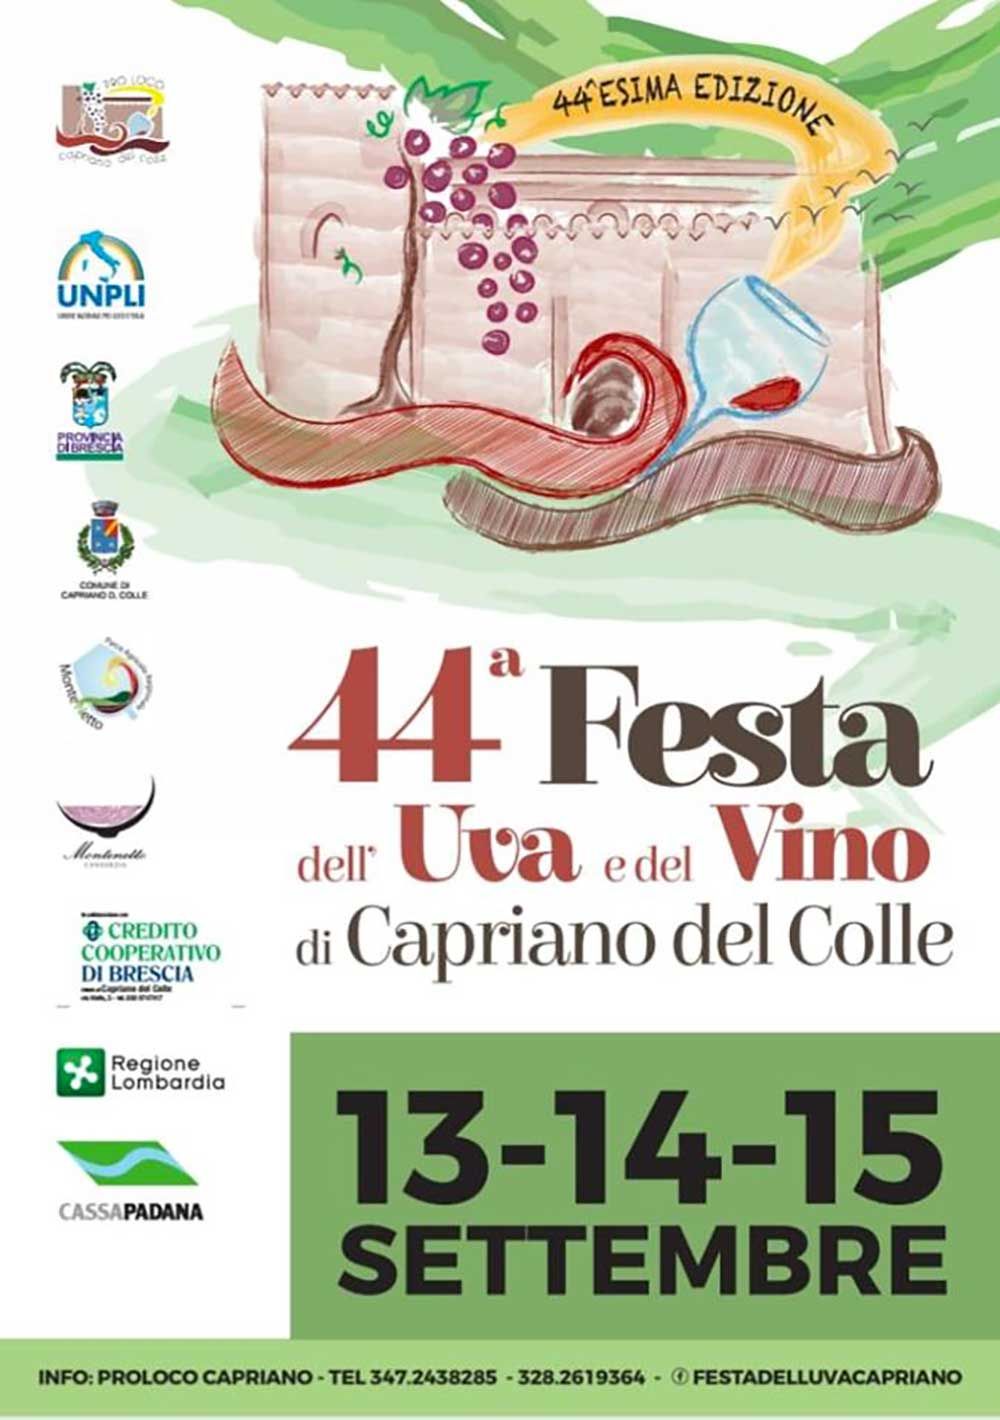 festa-uva-vino-capriano-del-colle-2019